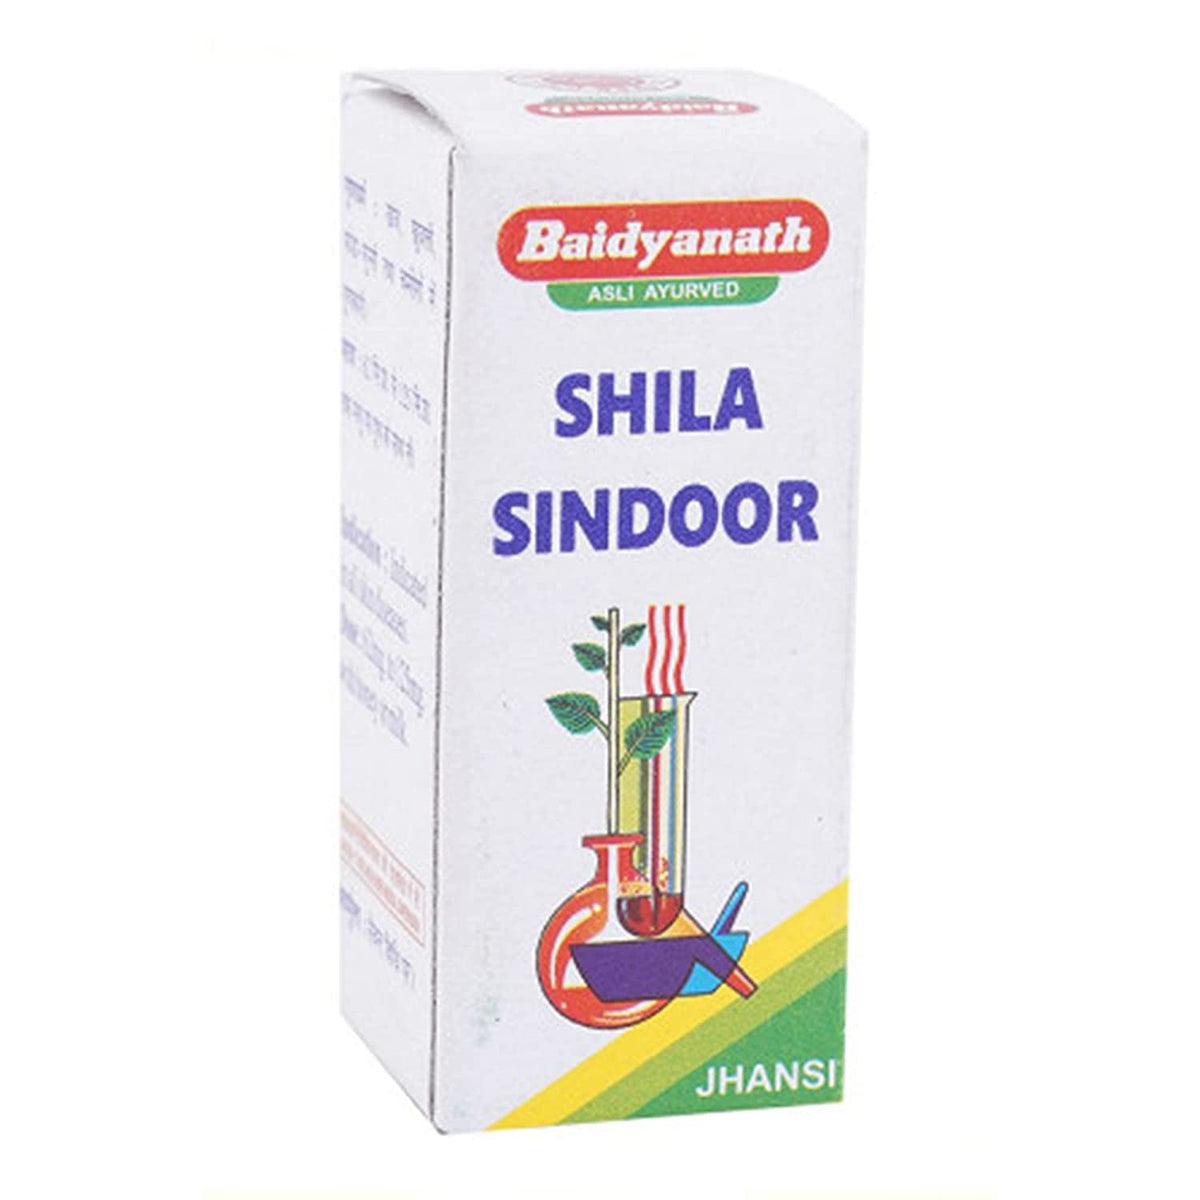 Baidyanath Ayurvedisches (Jhansi) Shila Sindoor-Pulver 2,5 g